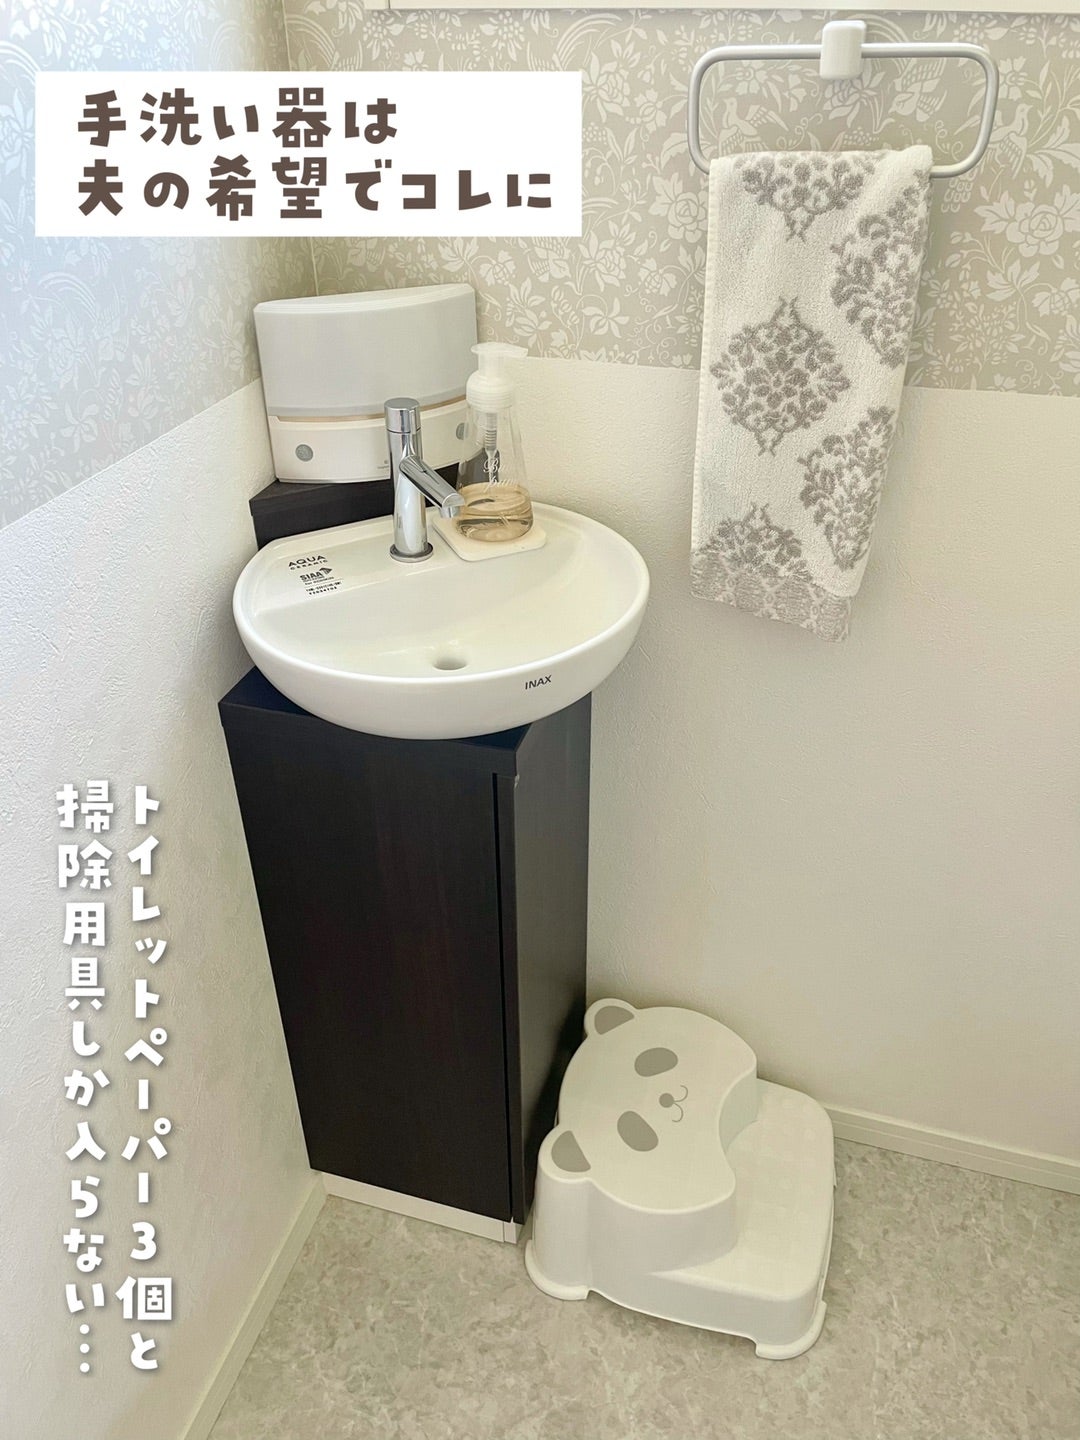  リクシル 手洗い器  コフレル トイレ手洗器 スリム 壁付 300サイズ 温水自動水栓 カウンターキャビネットタイプ - 1